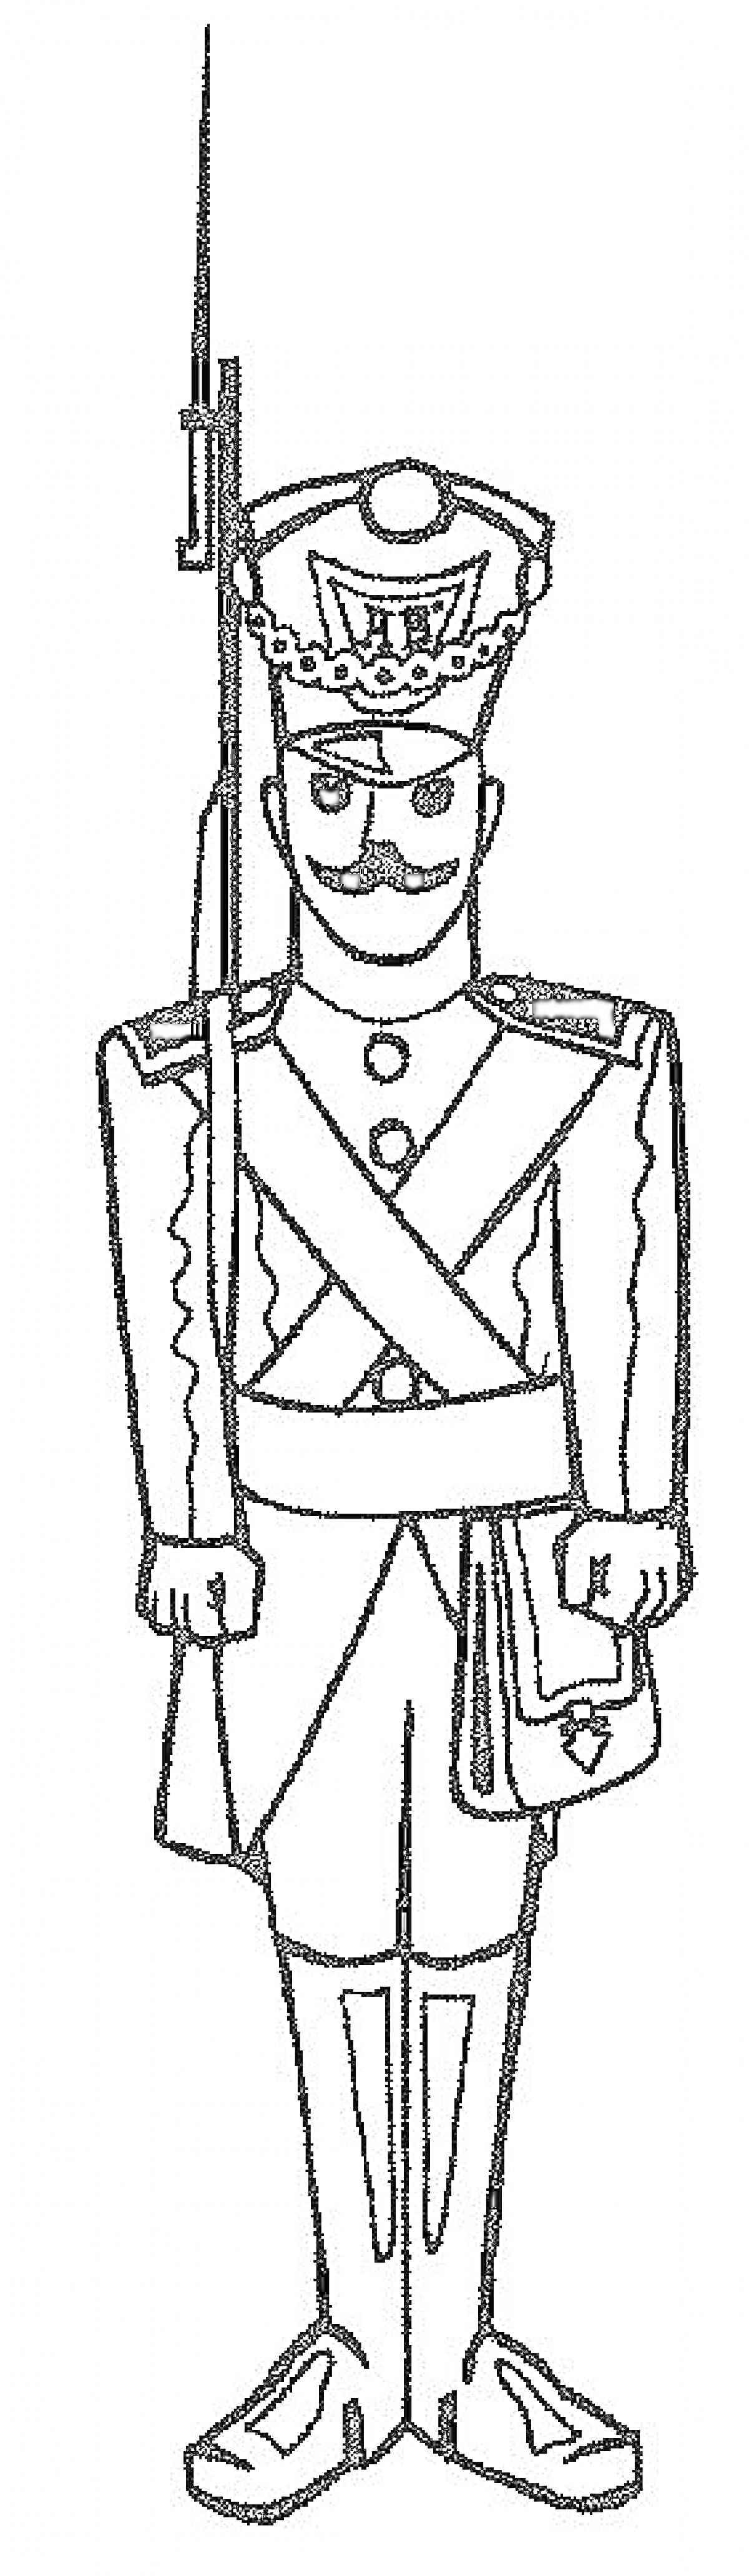 Раскраска Солдатик в форме с мушкетом и усами, с кивером на голове и сумкой через плечо.